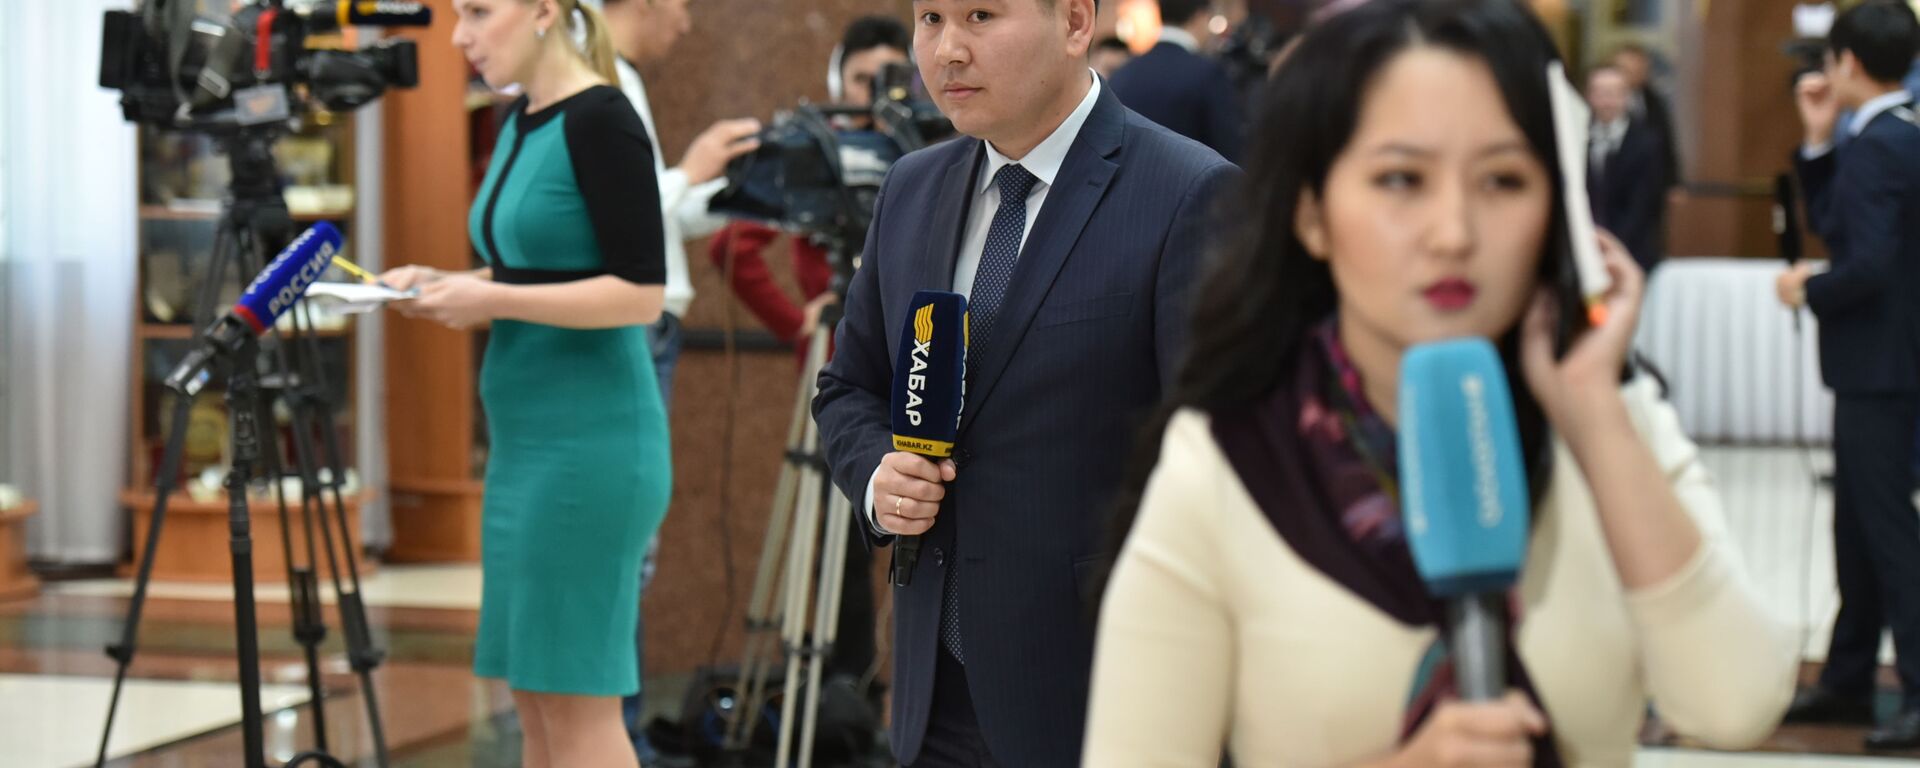 Журналисты перед началом церемонии принесения присяги выходят в прямой эфир - Sputnik Казахстан, 1920, 16.12.2022